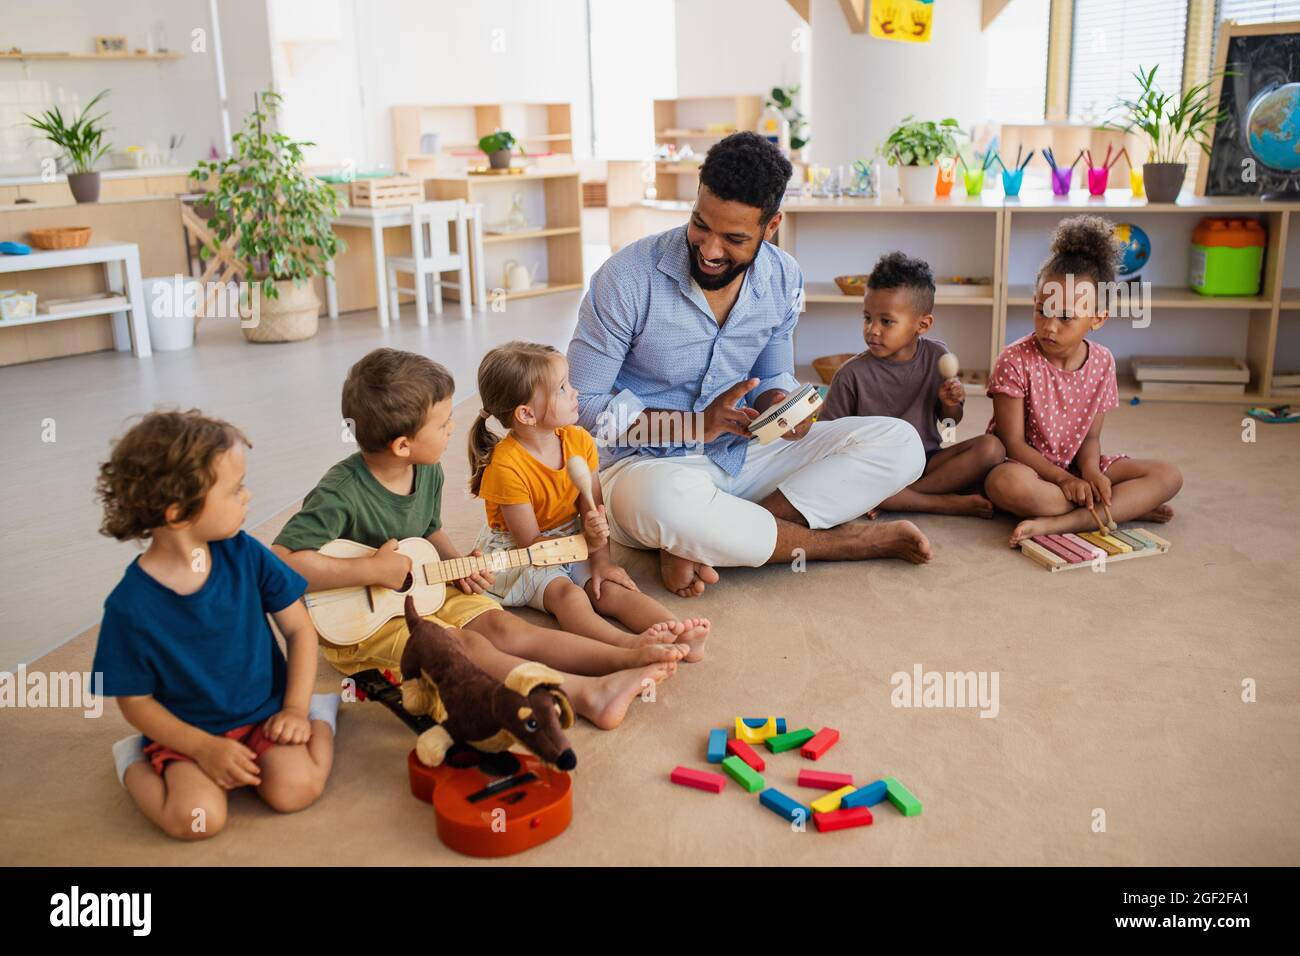 Gruppe von kleinen Kindern im Kindergarten mit einem Lehrer, der im Klassenzimmer auf dem Boden sitzt und Musikinstrumente spielt. Stockfoto